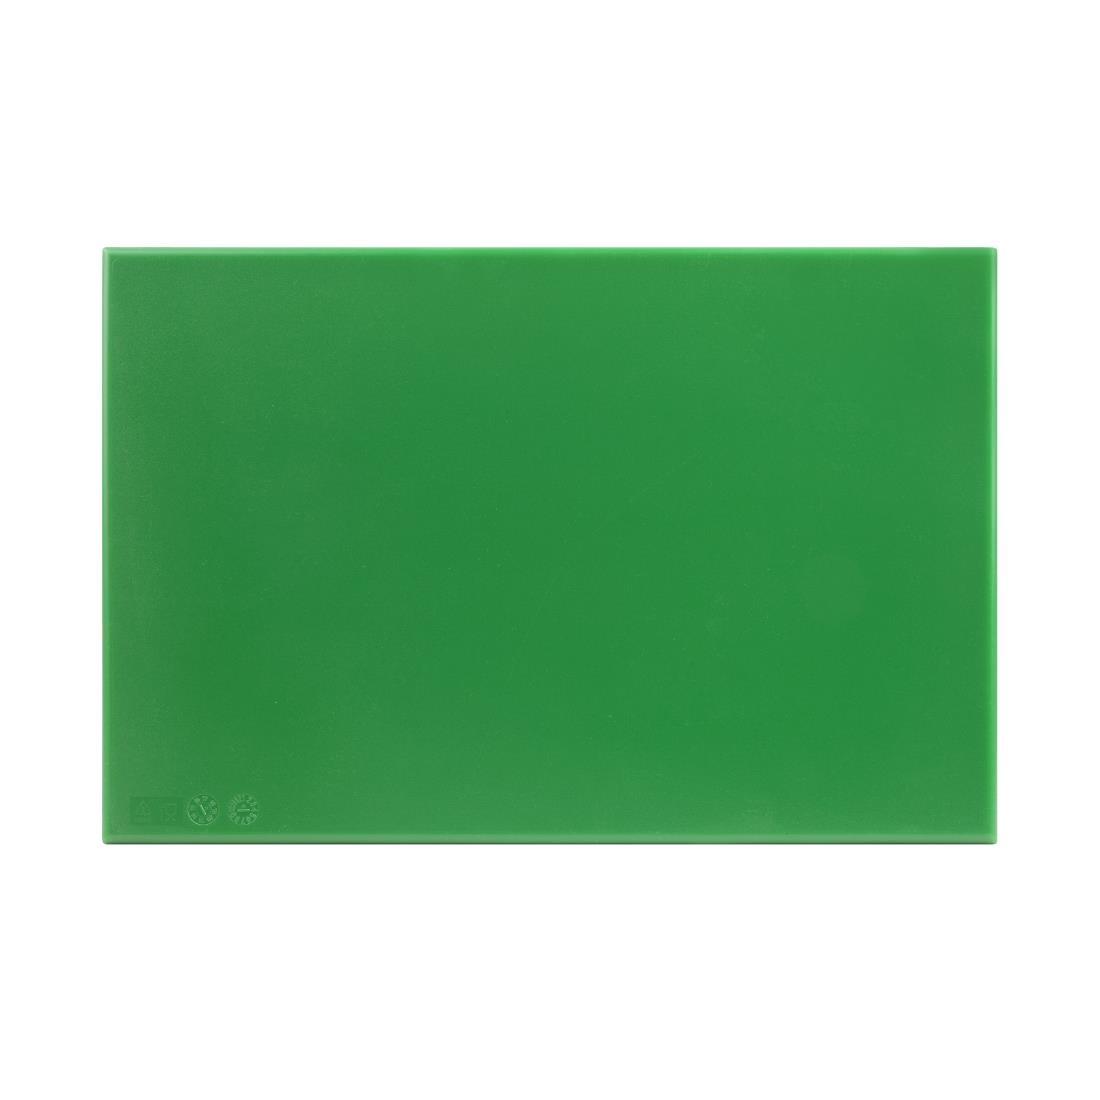 Hygiplas Anti Microbial High Density Green Chopping Board - F158  - 2